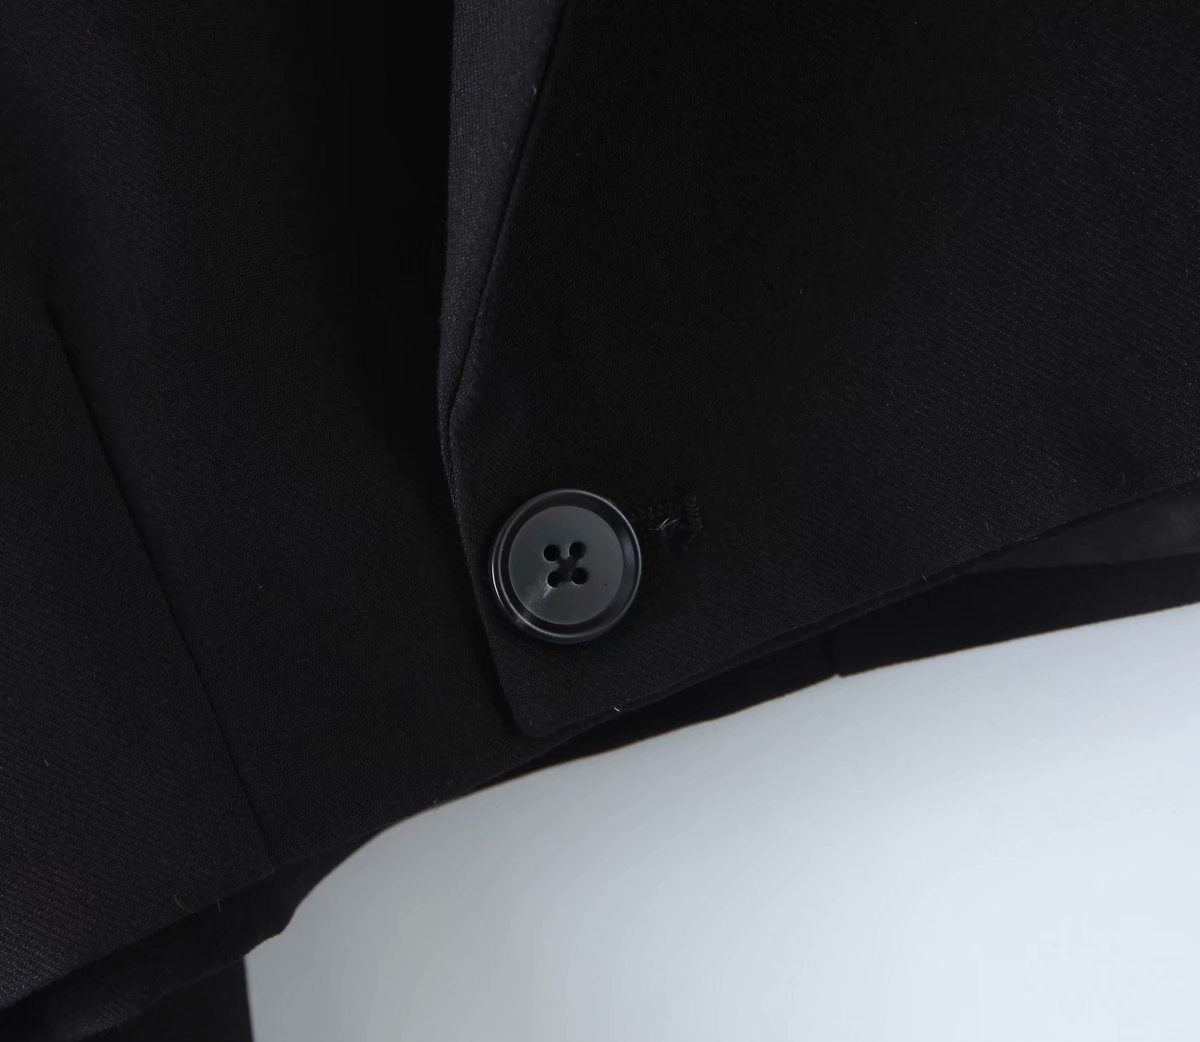 Black short suit jacket & skirt suit set NSAM43867